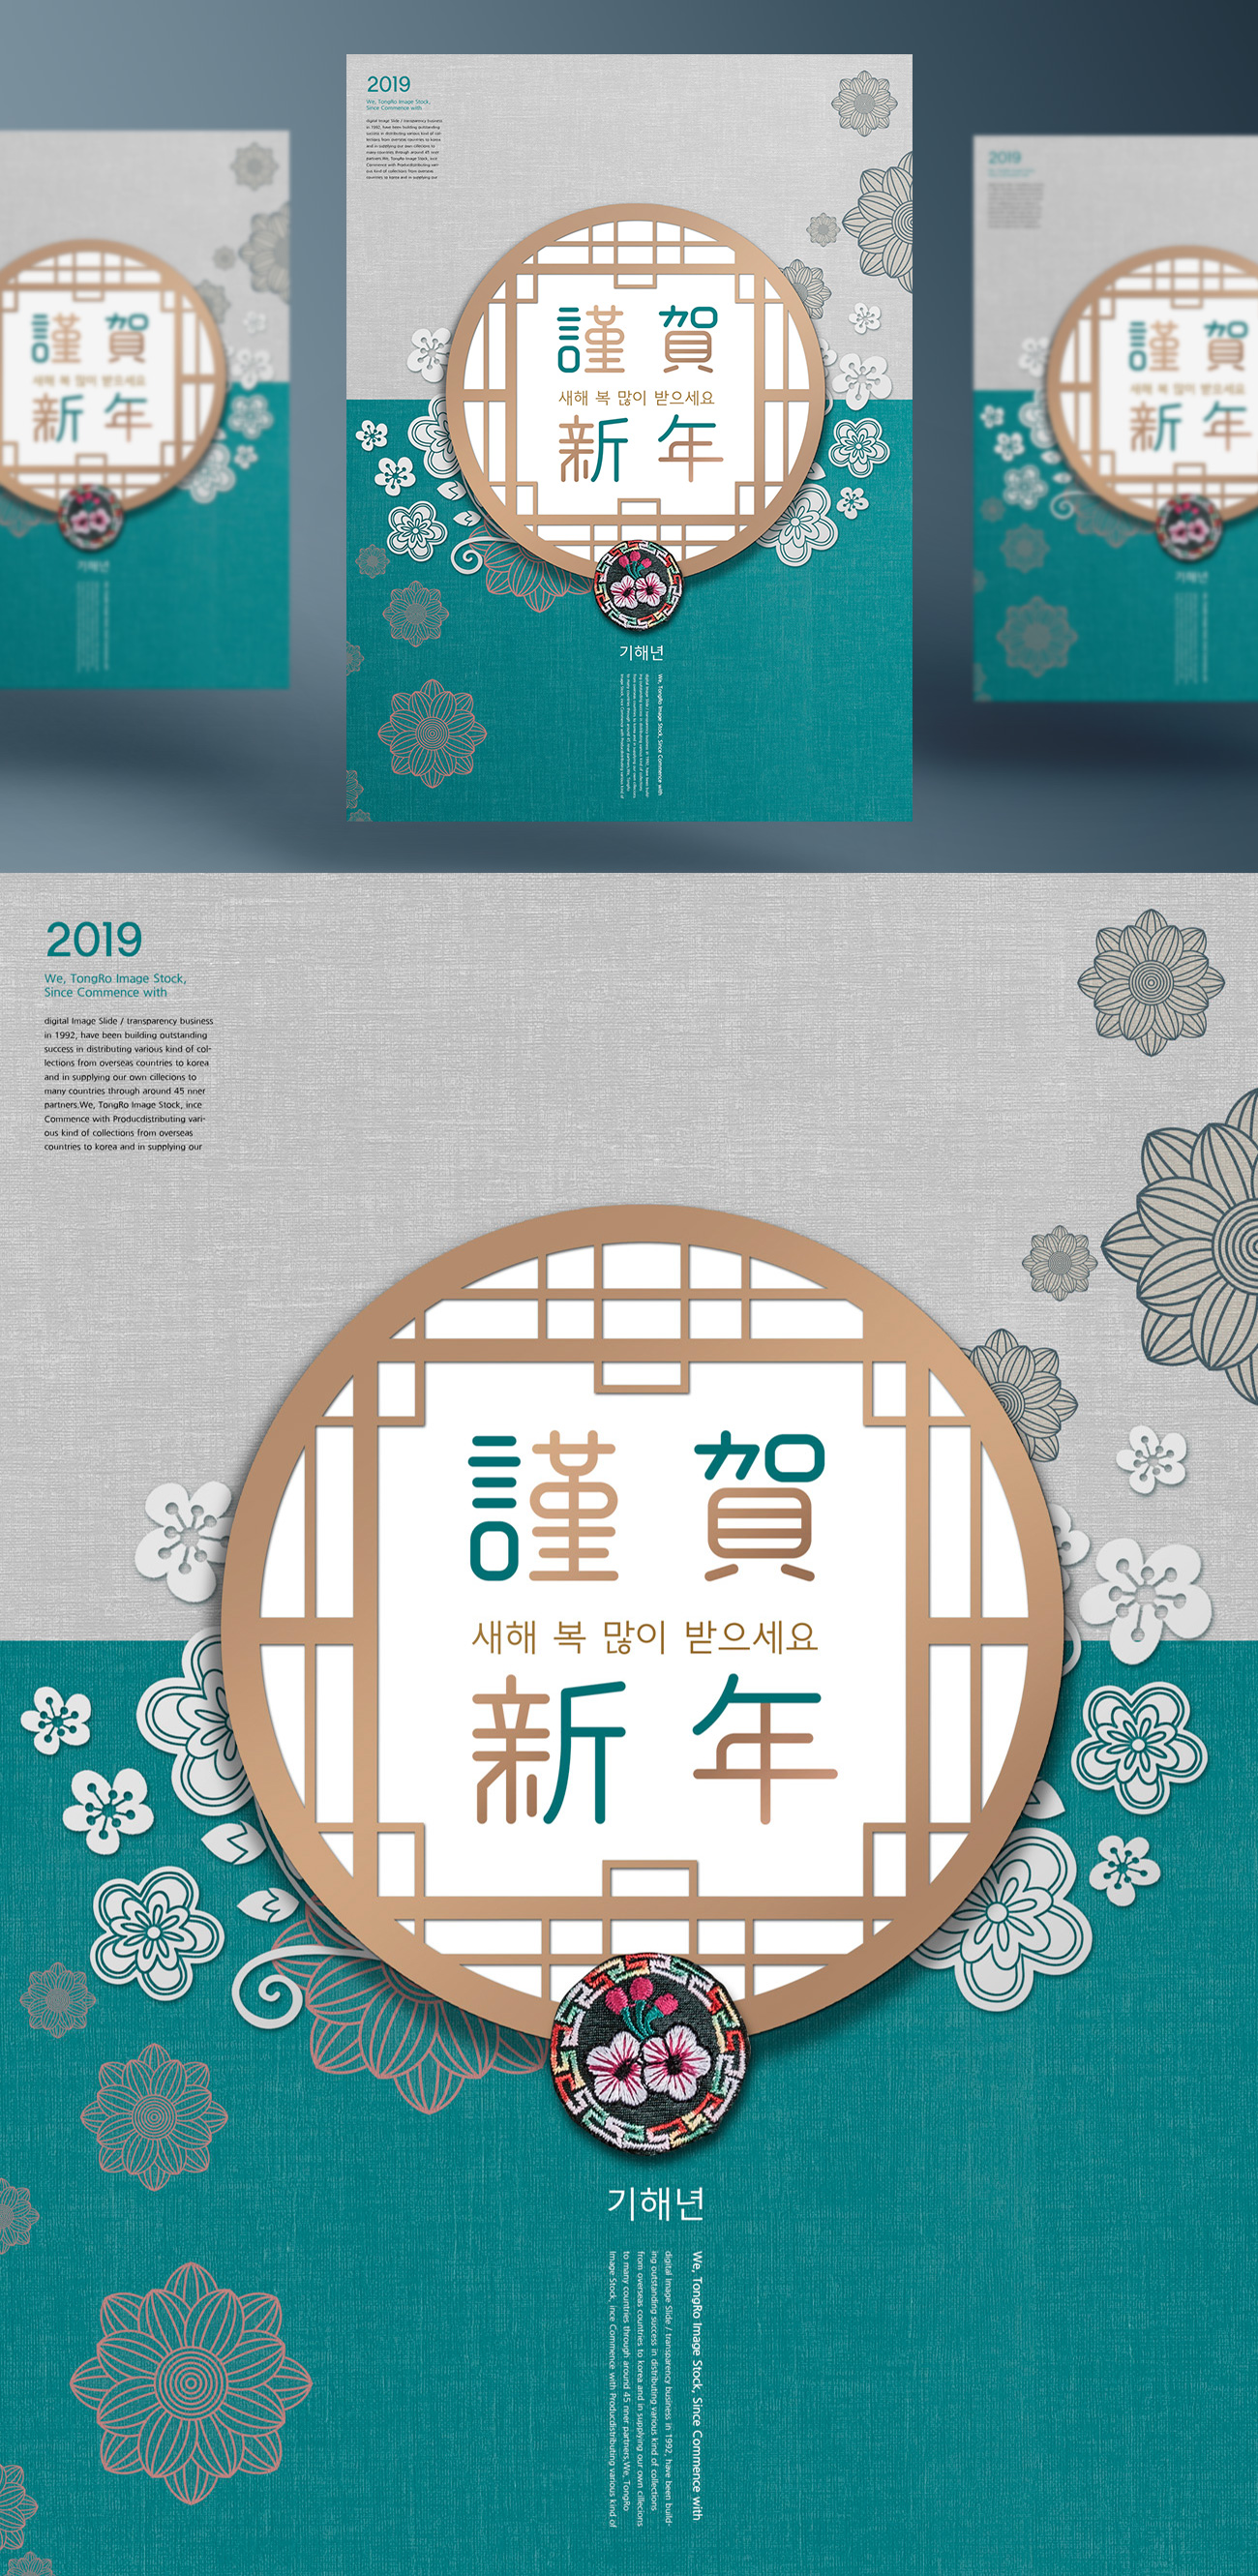 2019年谨贺新年东方传统版式海报PSD模版素材